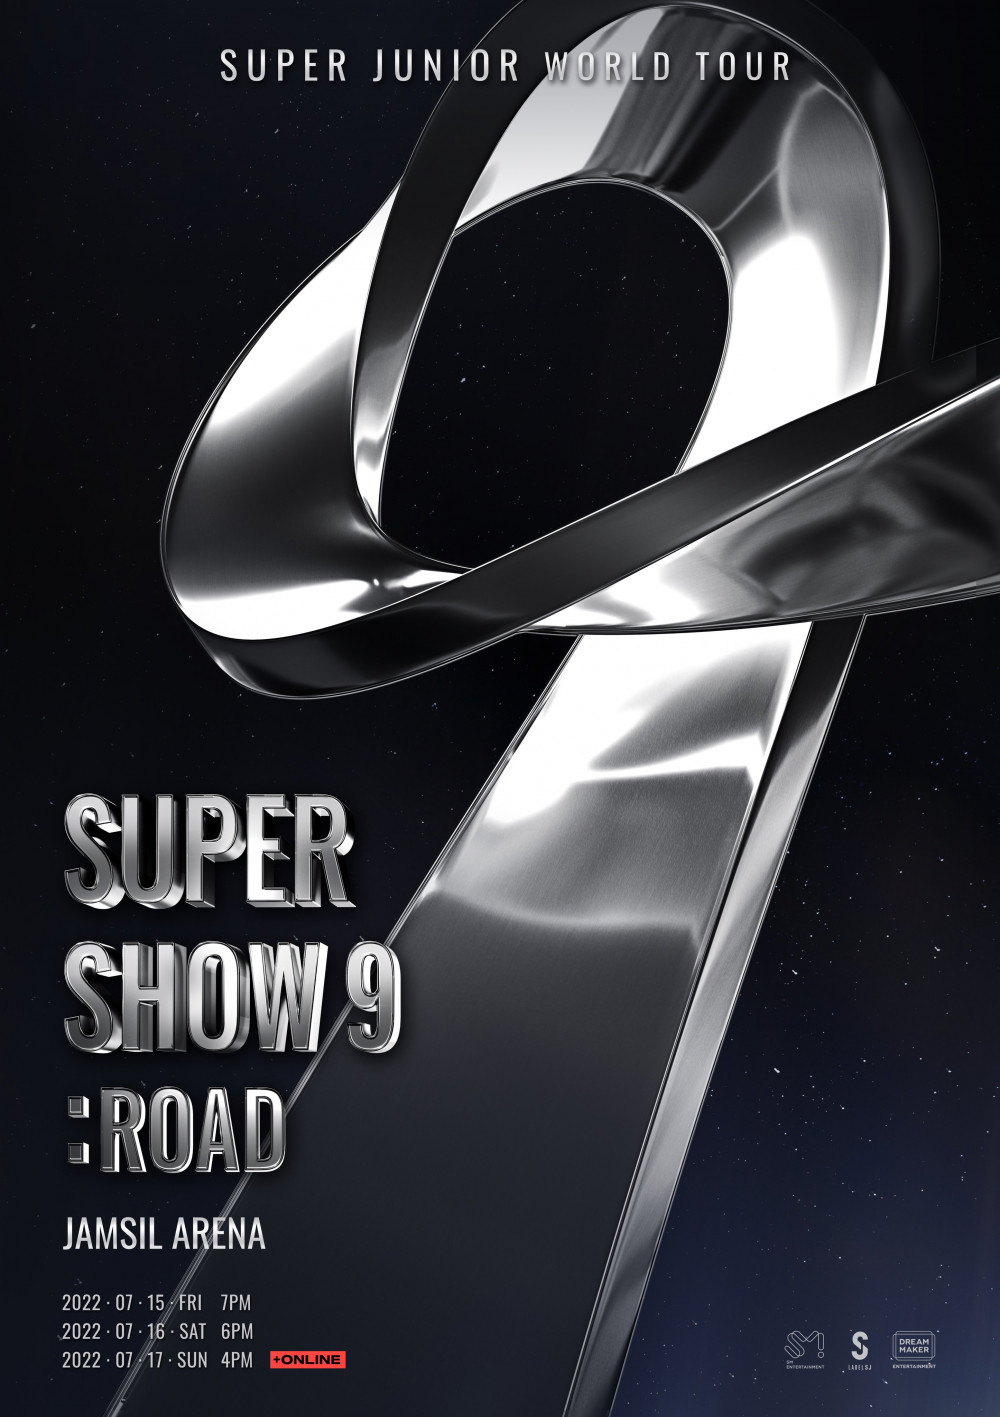 Super Junior объявили о мировом туре «Super Show 9 : Road»